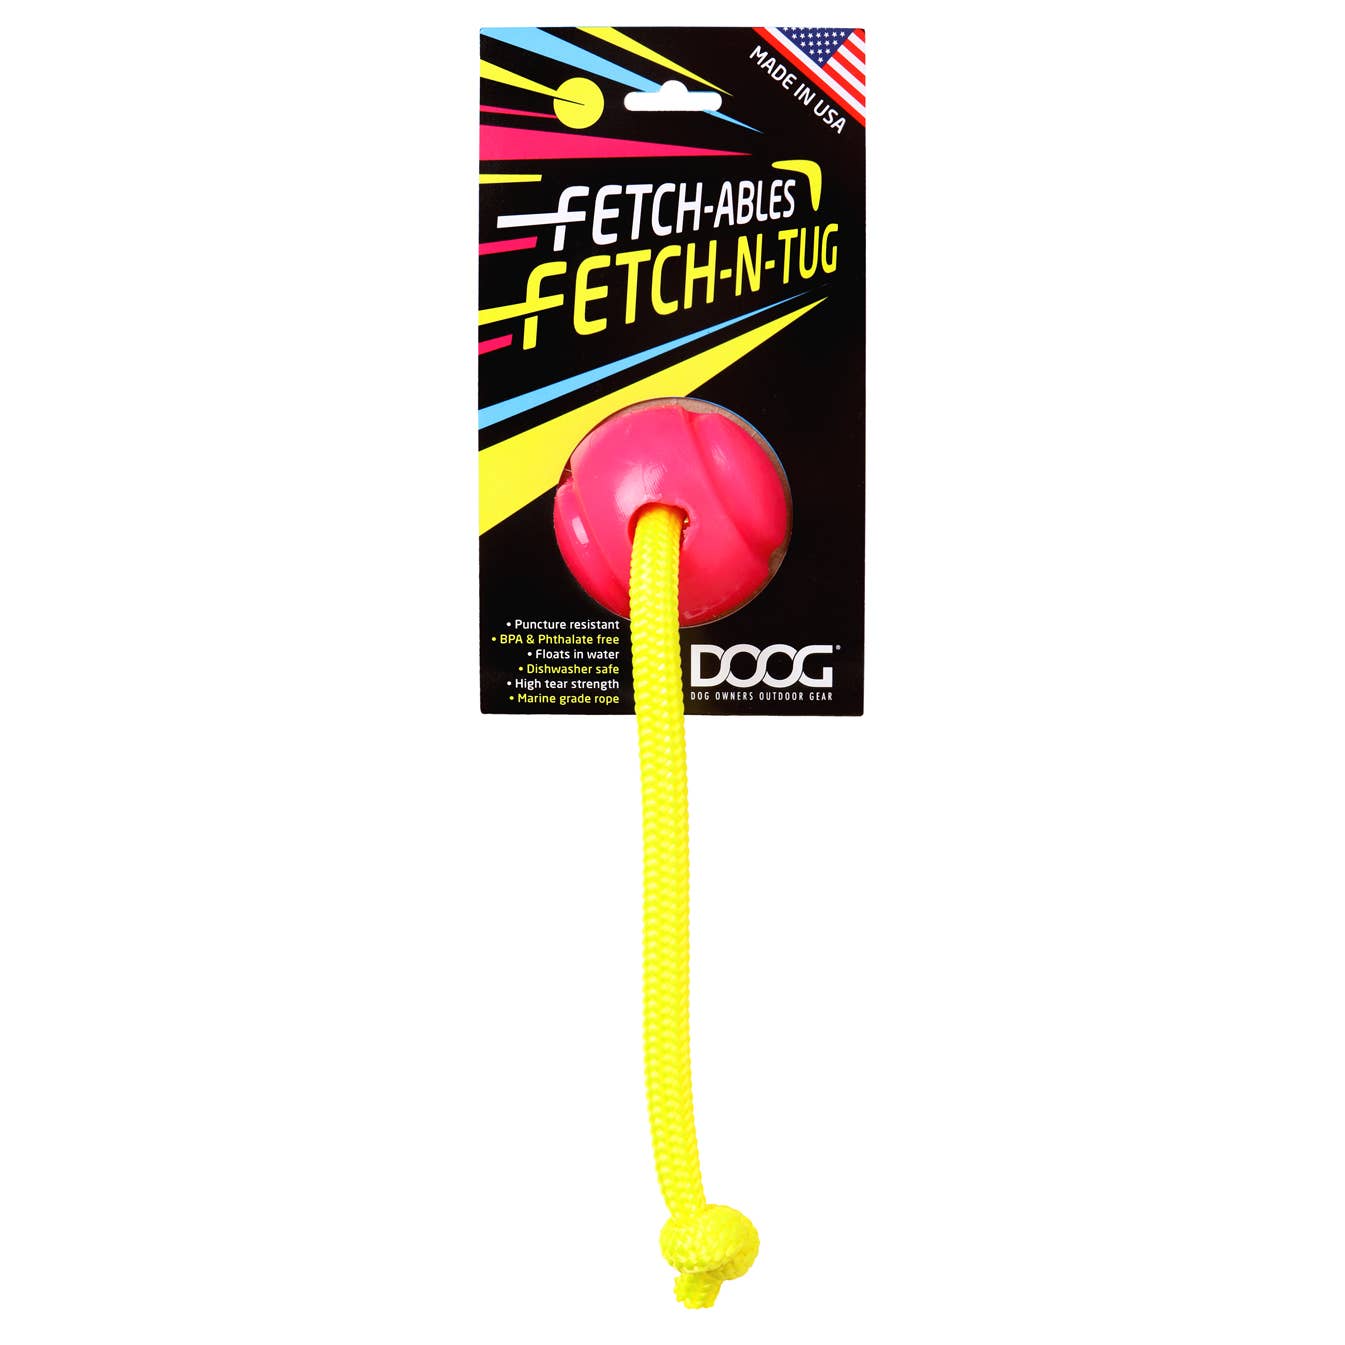 DOOG Fetchables - Fetch-N-Tug Ball & Rope